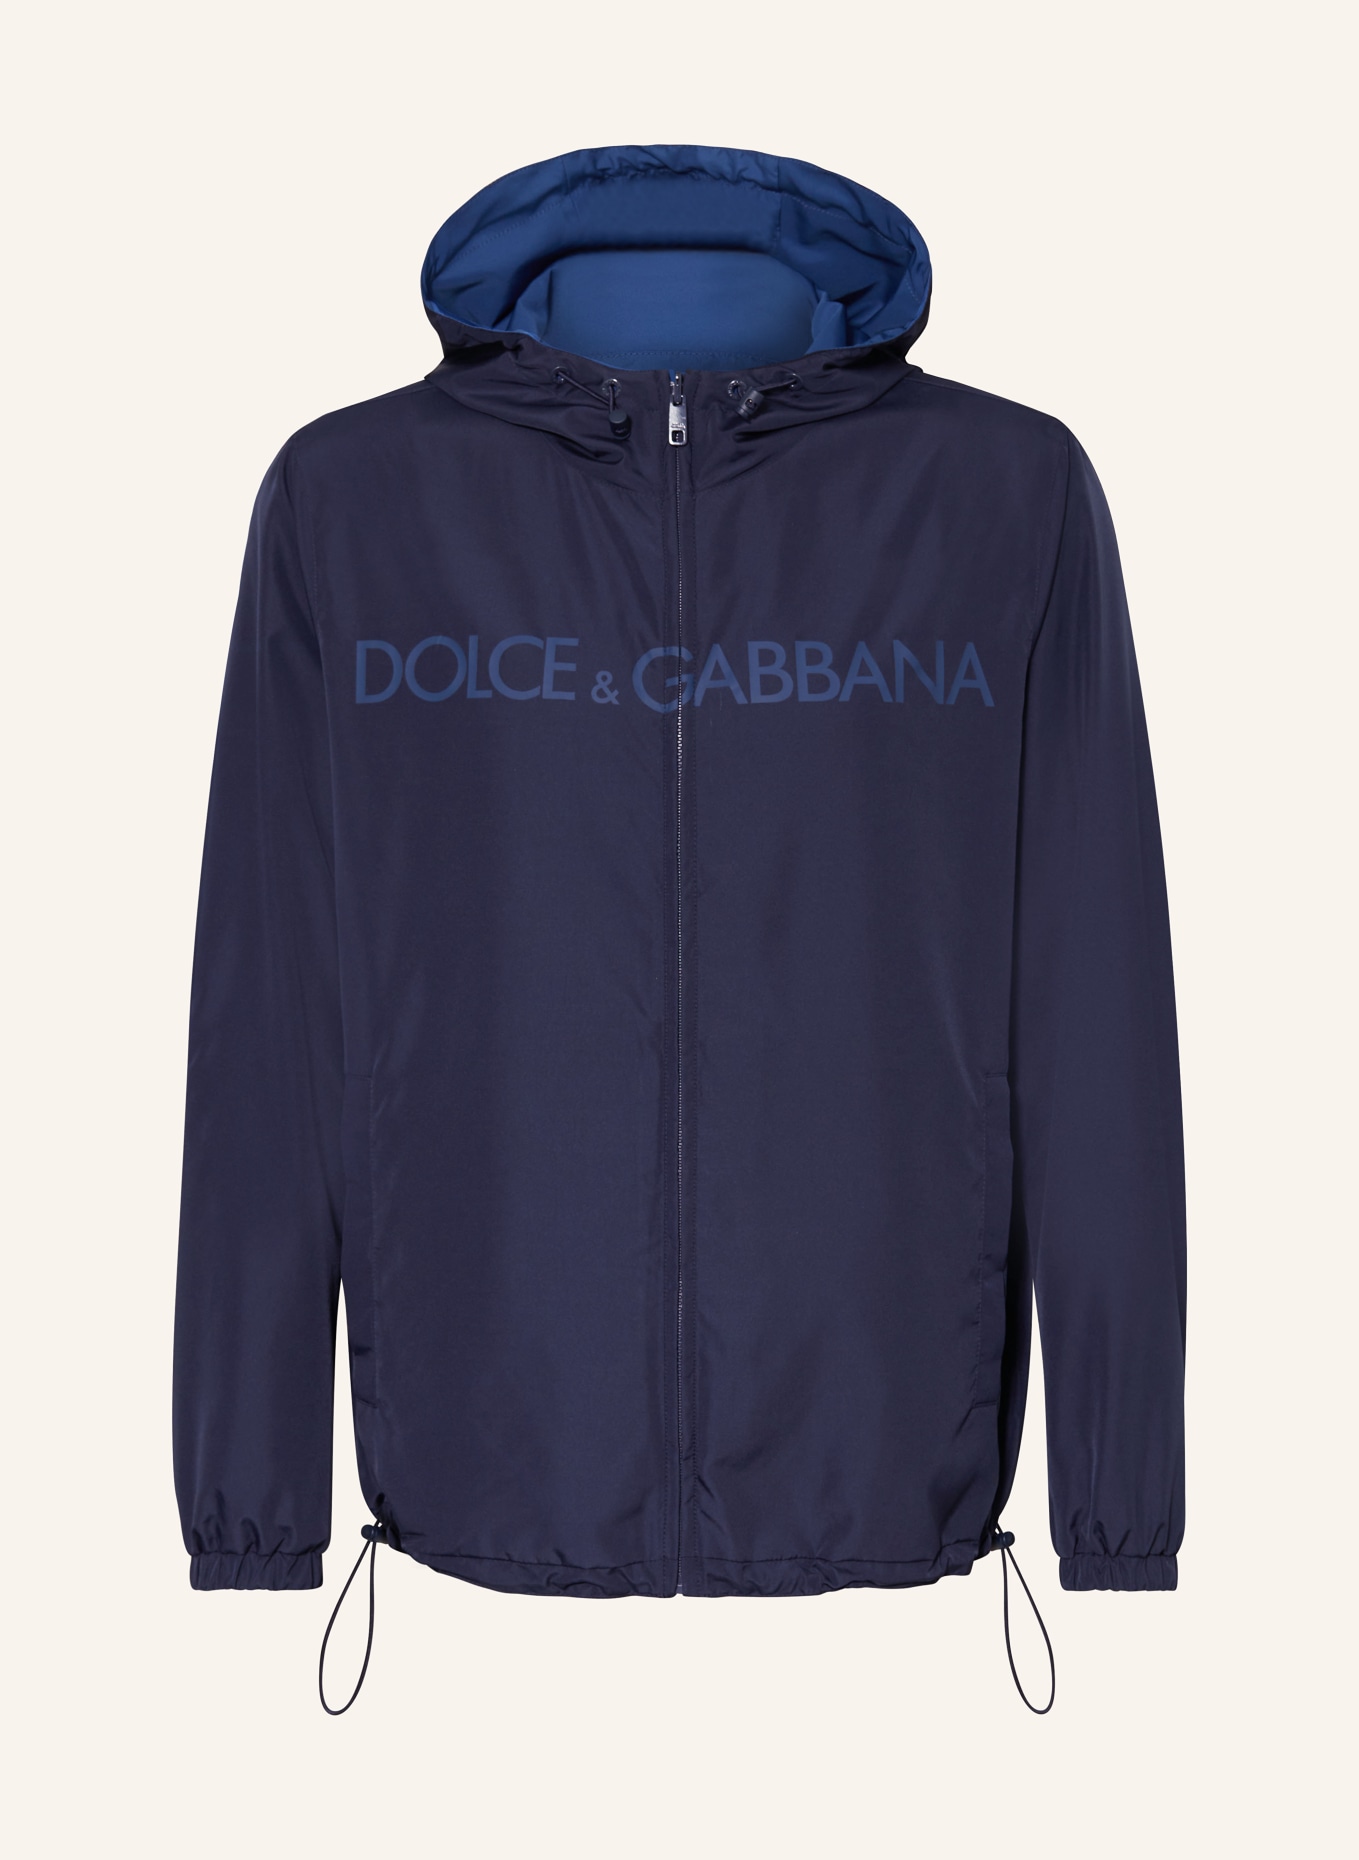 DOLCE & GABBANA Reversible jacket, Color: DARK BLUE (Image 1)